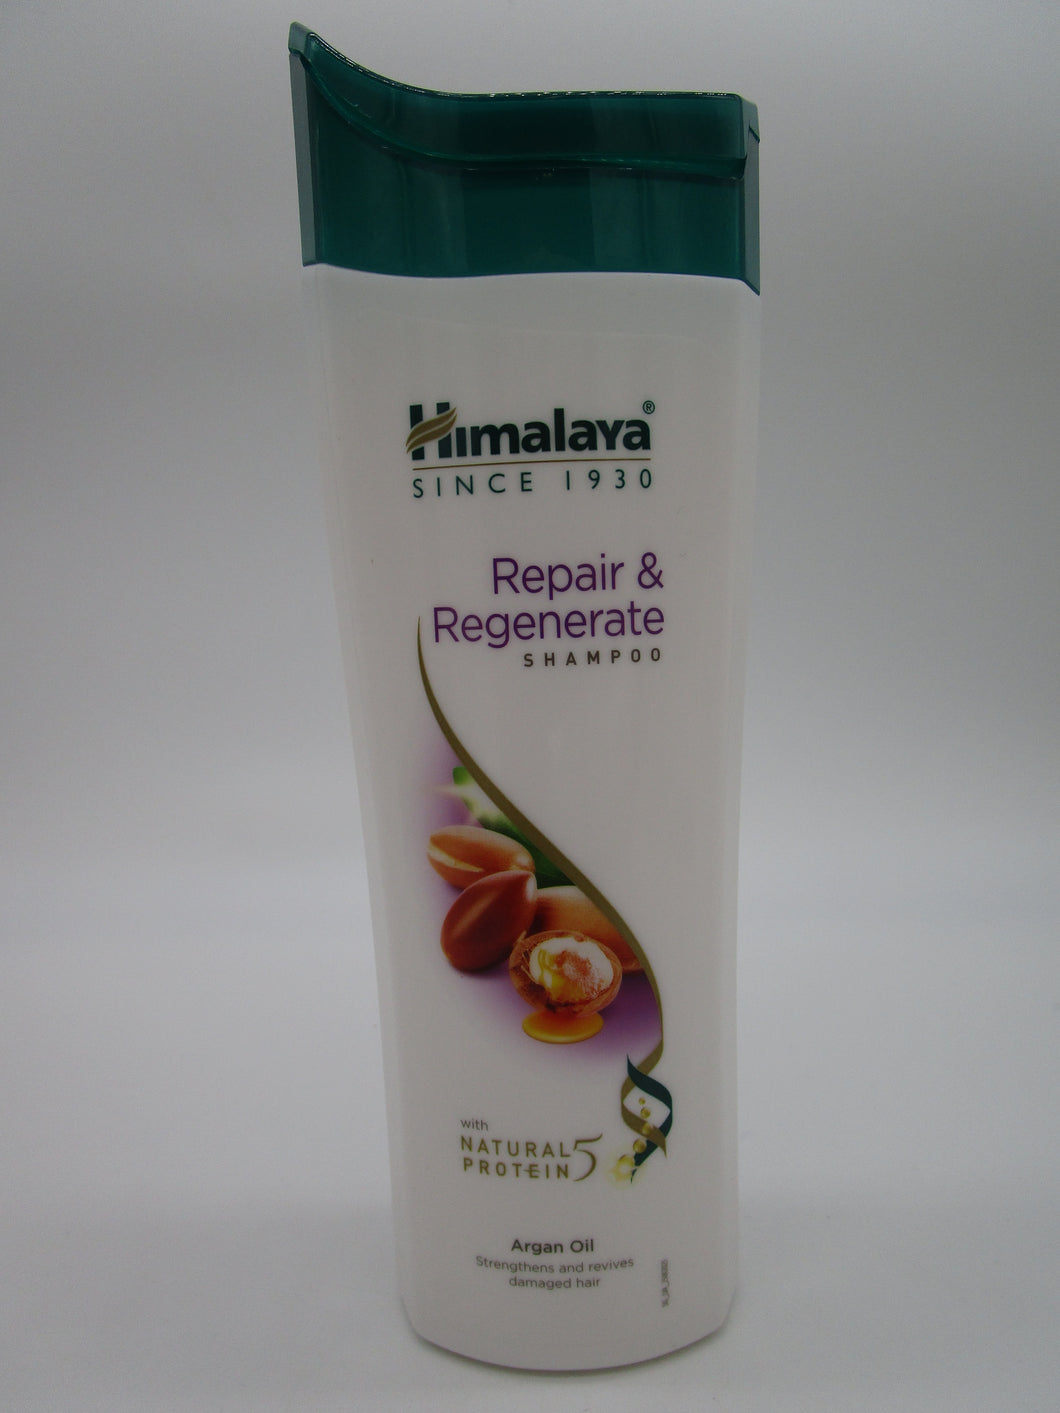 Himalaya shampoo repair & regenerate